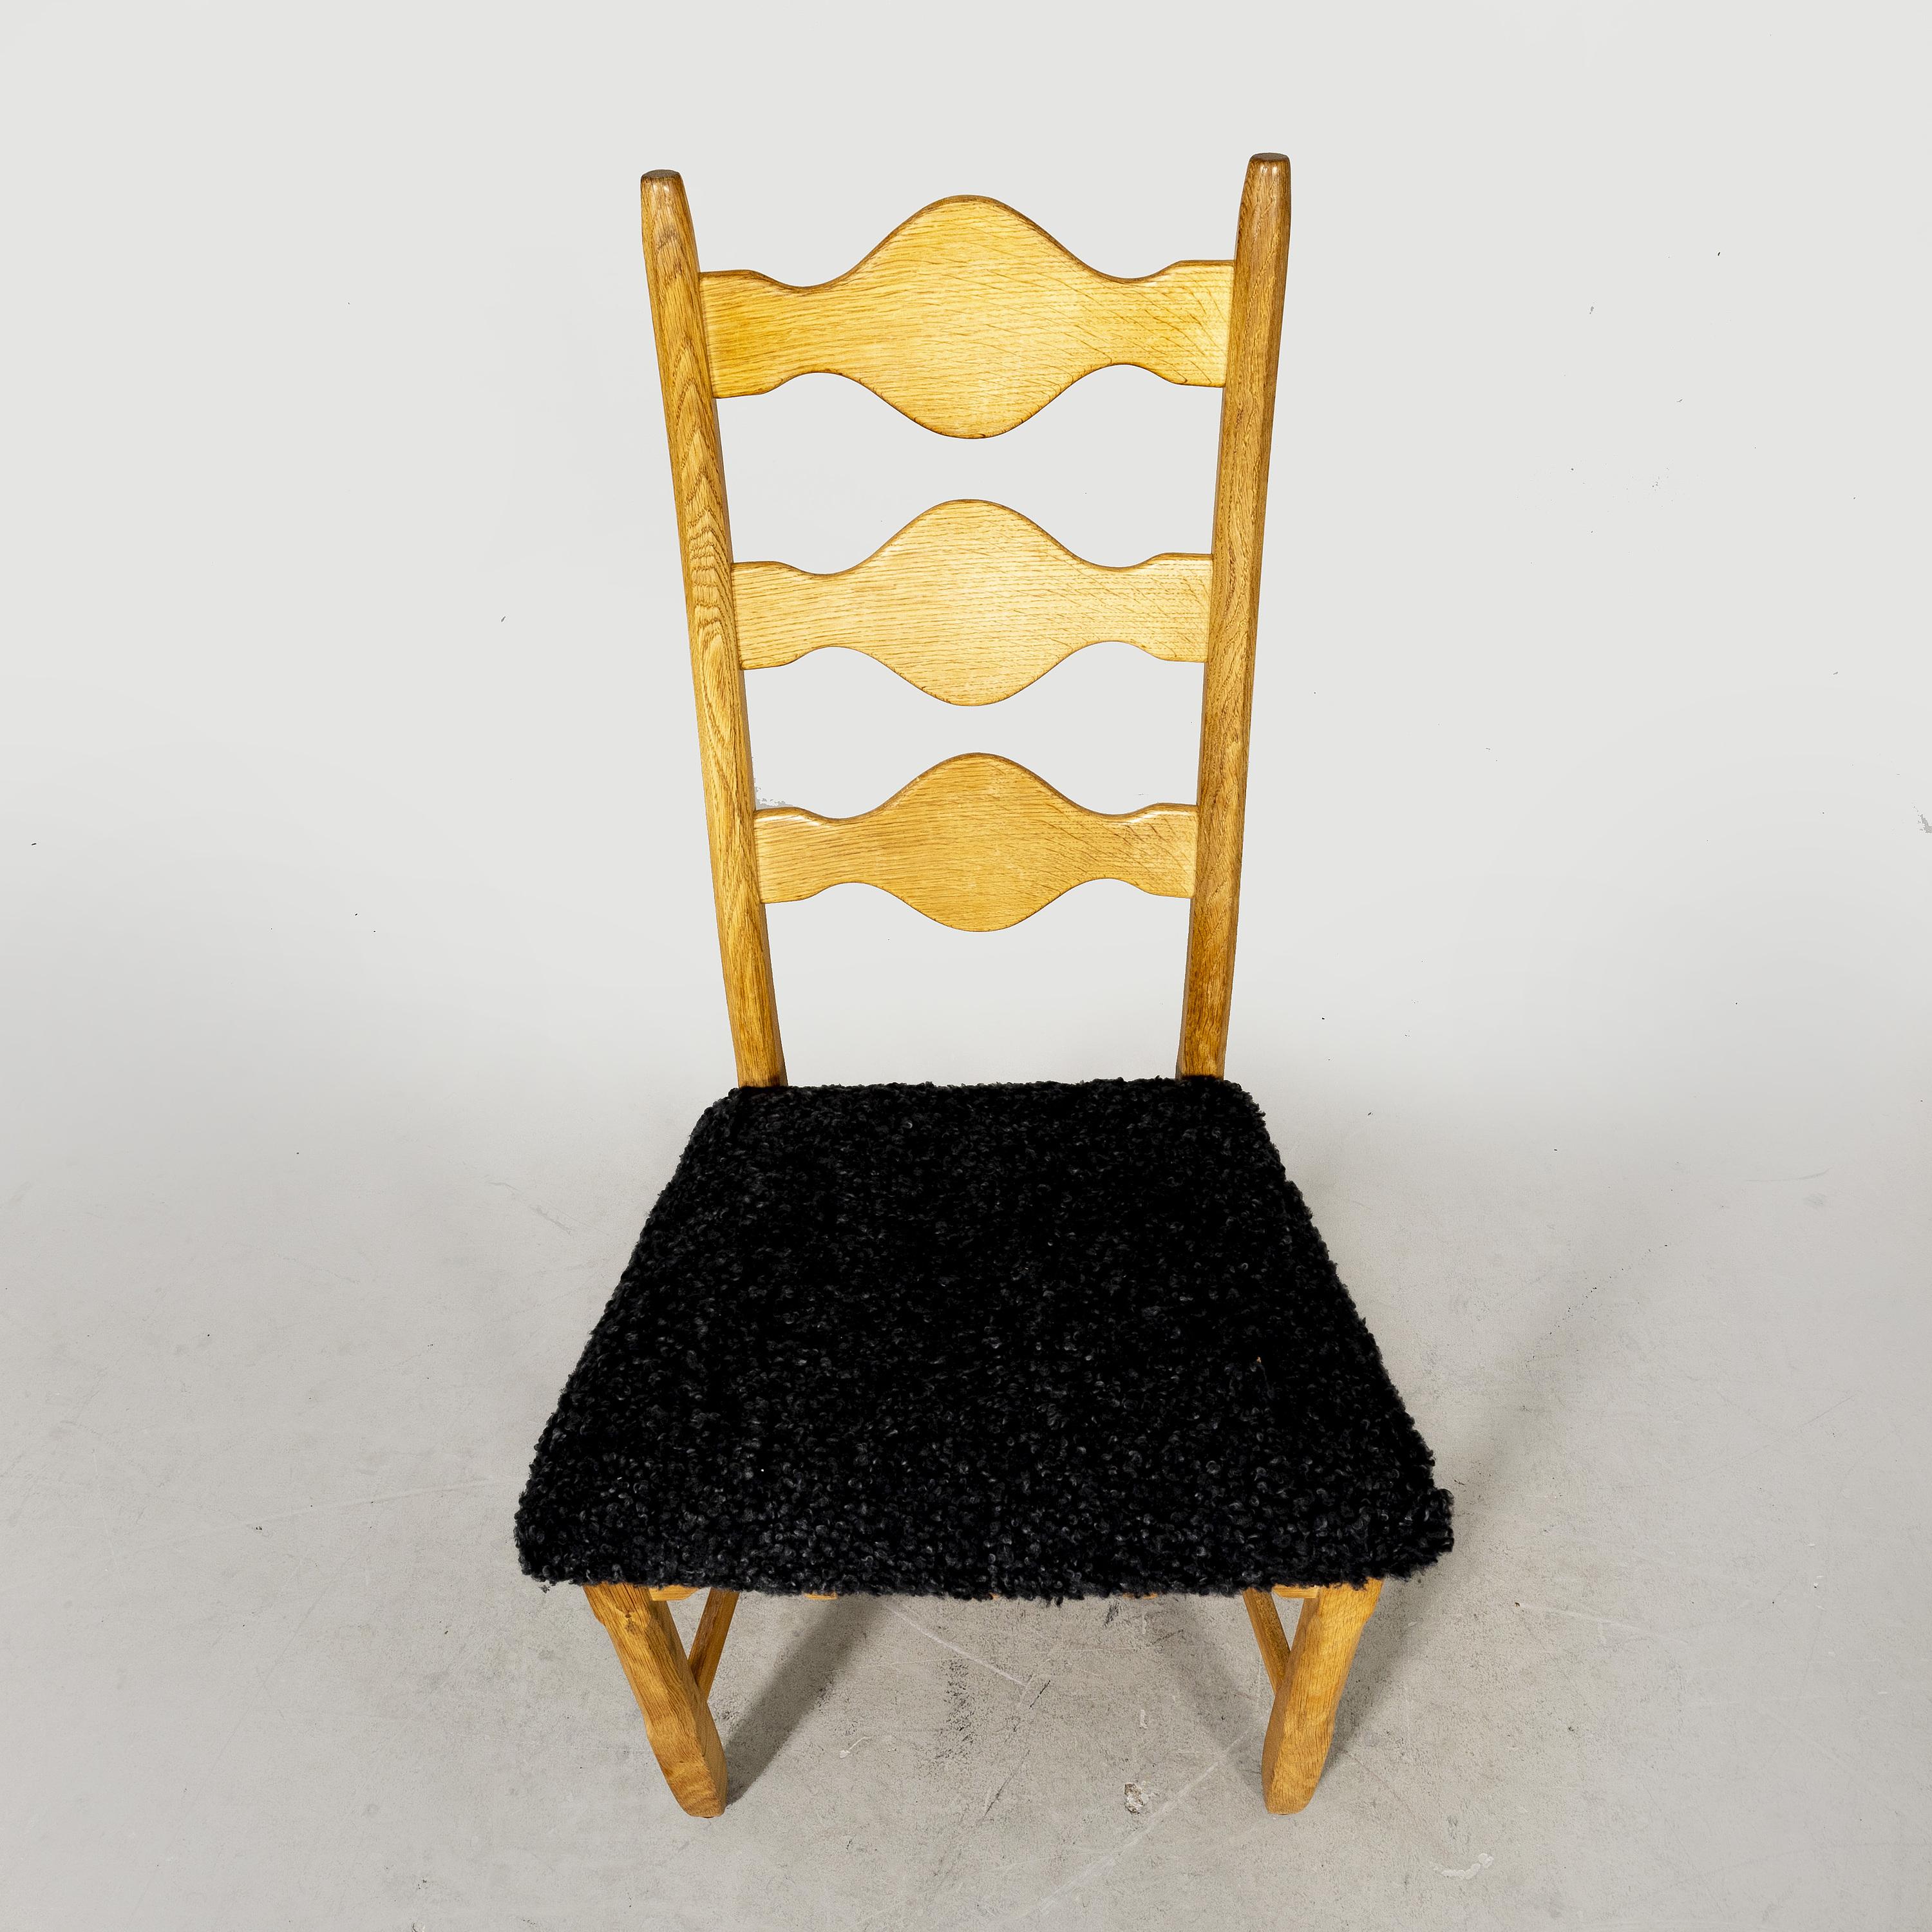 Un ensemble de 8 chaises de salle à manger a été conçu par Henning (Henry) Kjærnulf dans les années 1960. Les chaises ont été produites par Nyrup Møbelfabrik au Danemark et constituent une variante rare de la série 